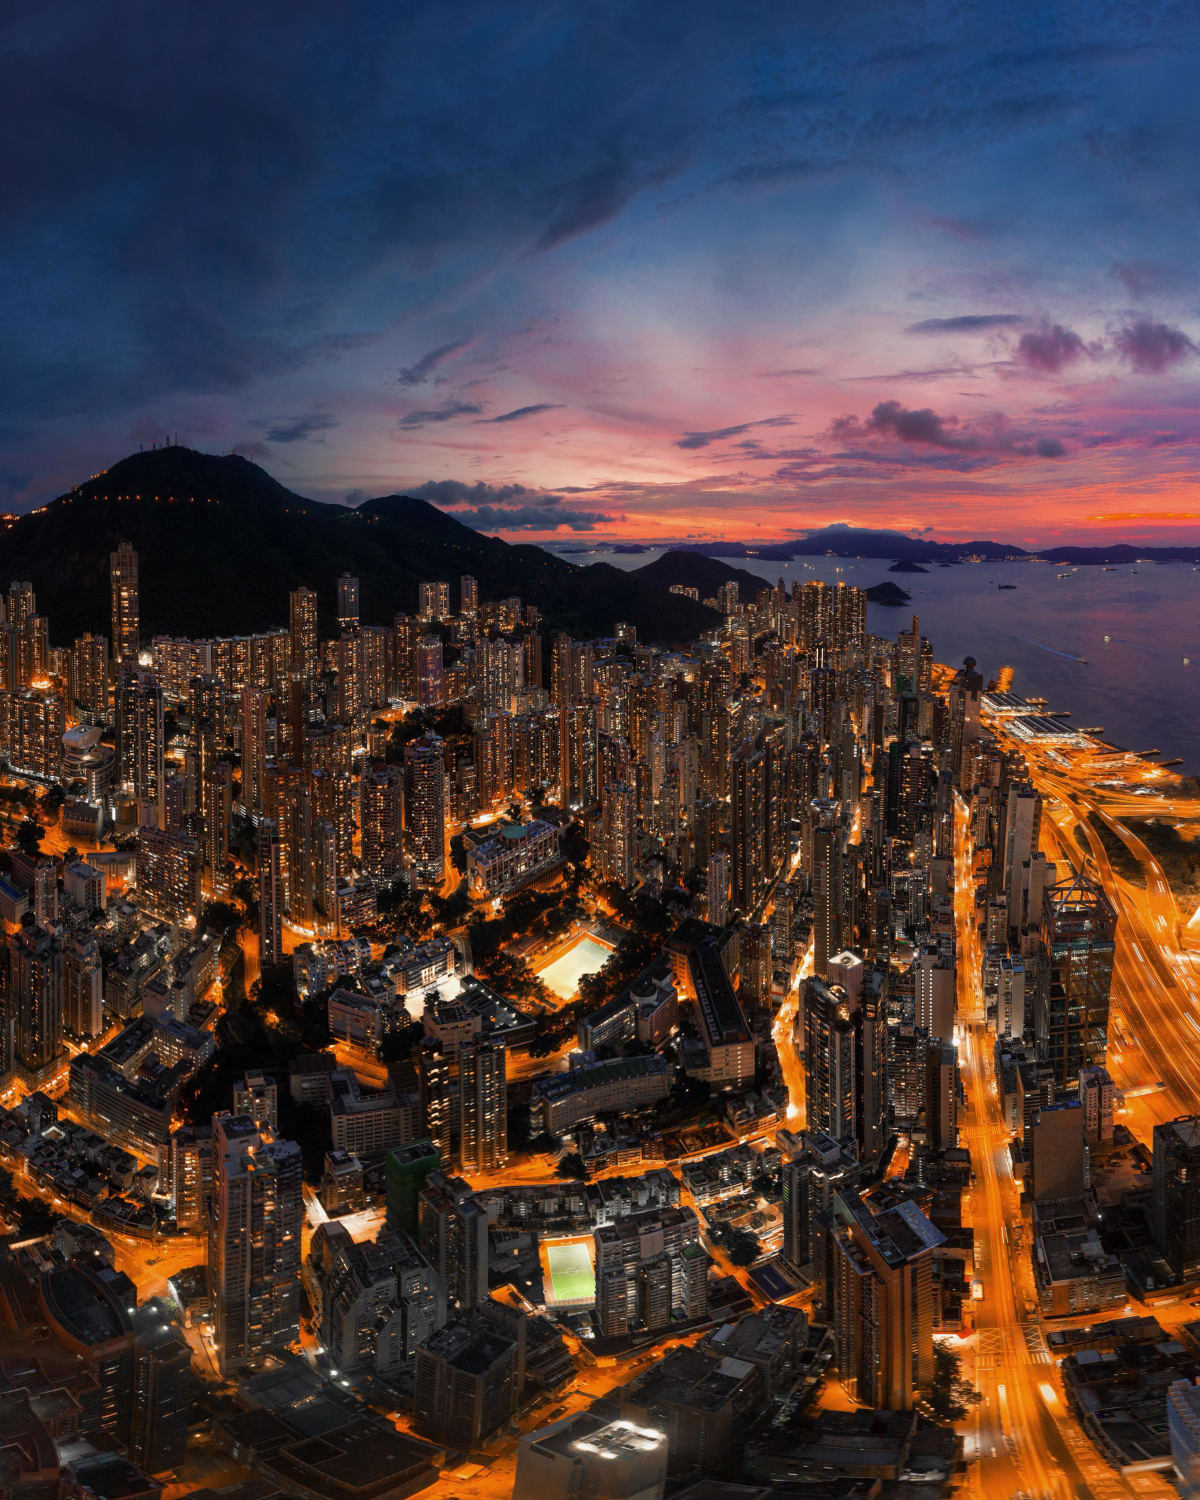 Skies ablaze in Hong Kong